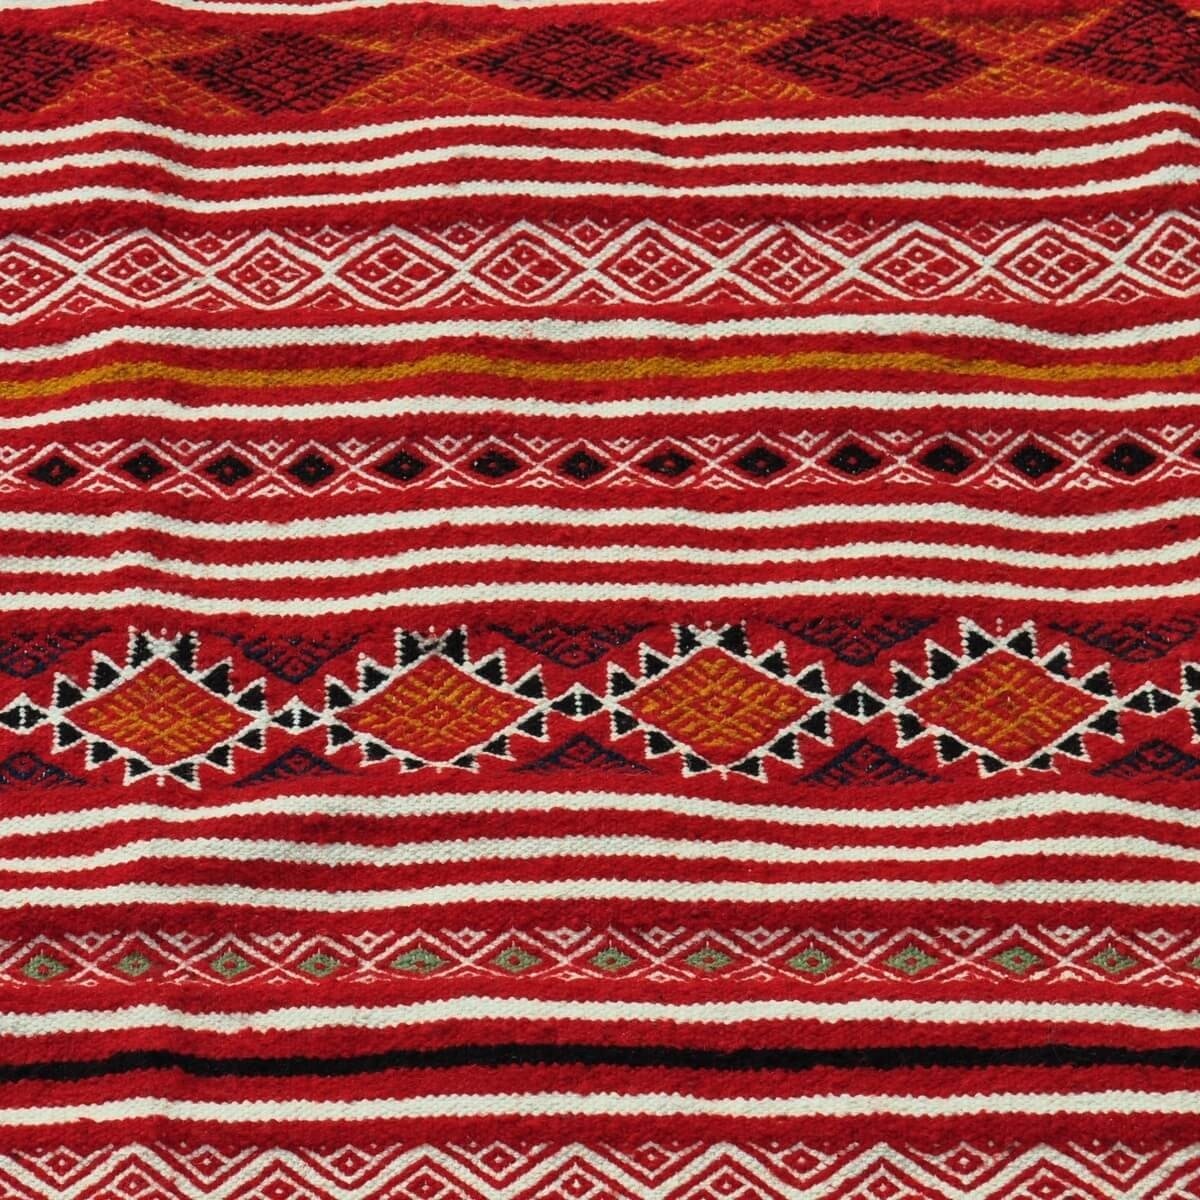 Berber Teppich Teppich Kelim Driba 110x210 Rot/Orange (Handgewebt, Wolle, Tunesien) Tunesischer Kelim-Teppich im marokkanischen 